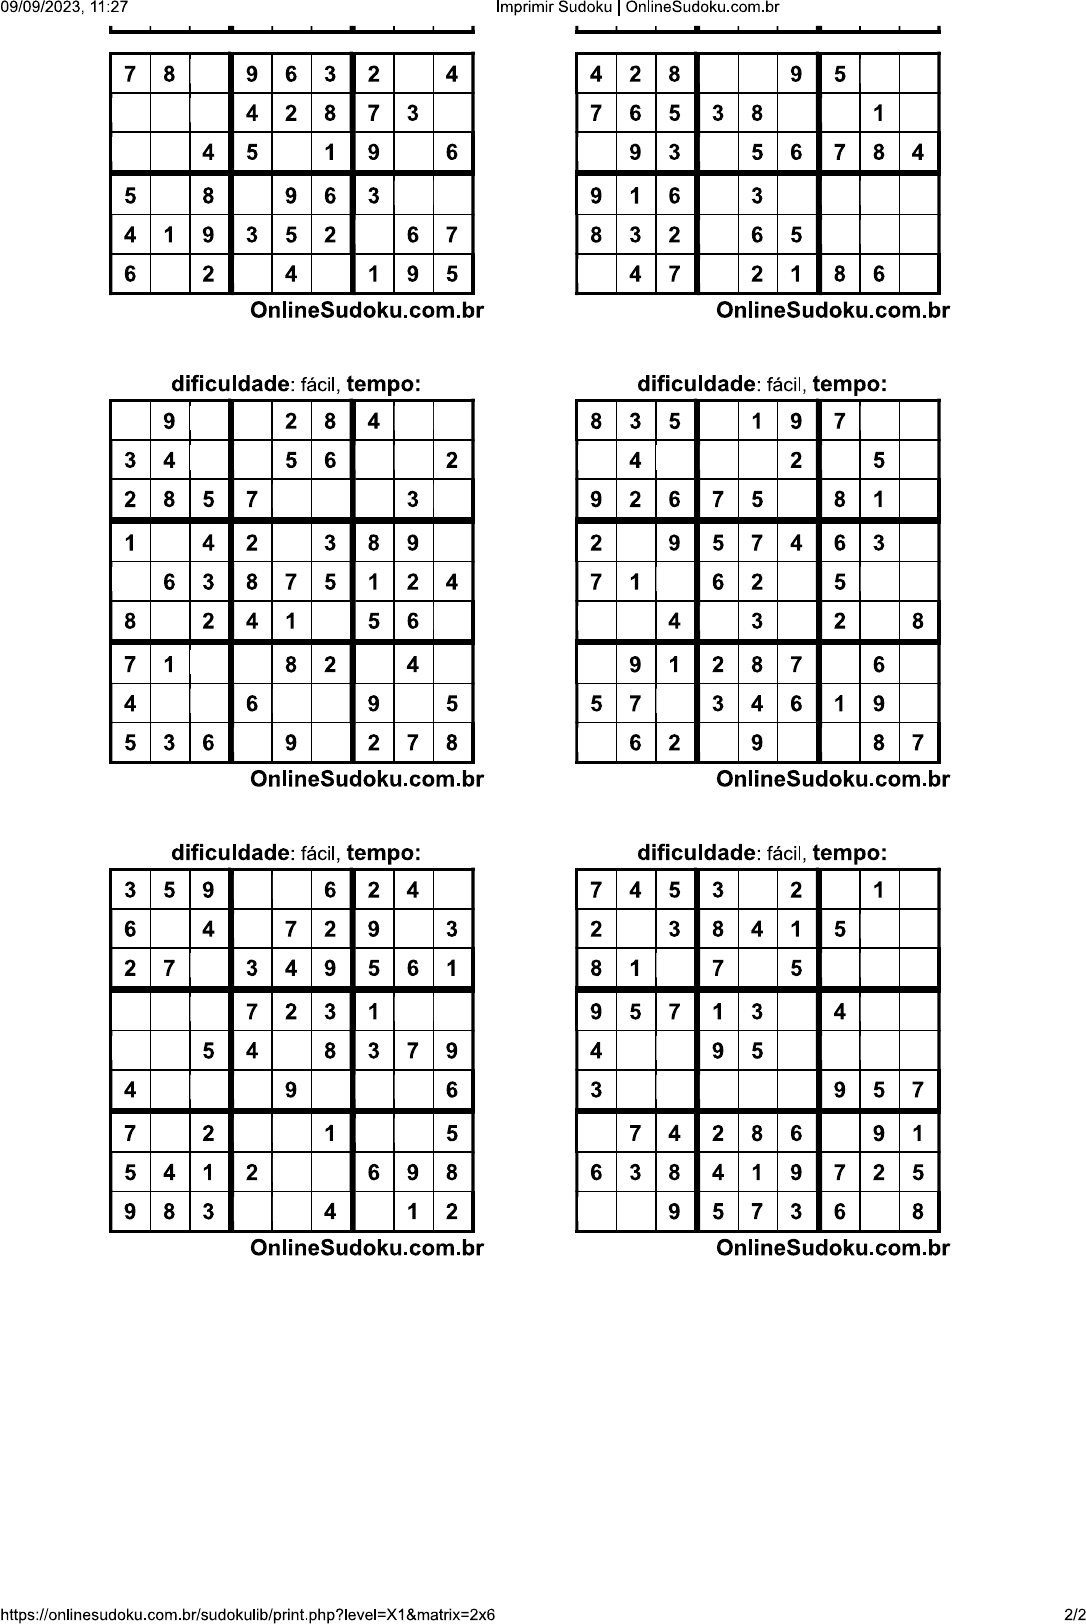 sudoku difícil 2x6 - Matemática